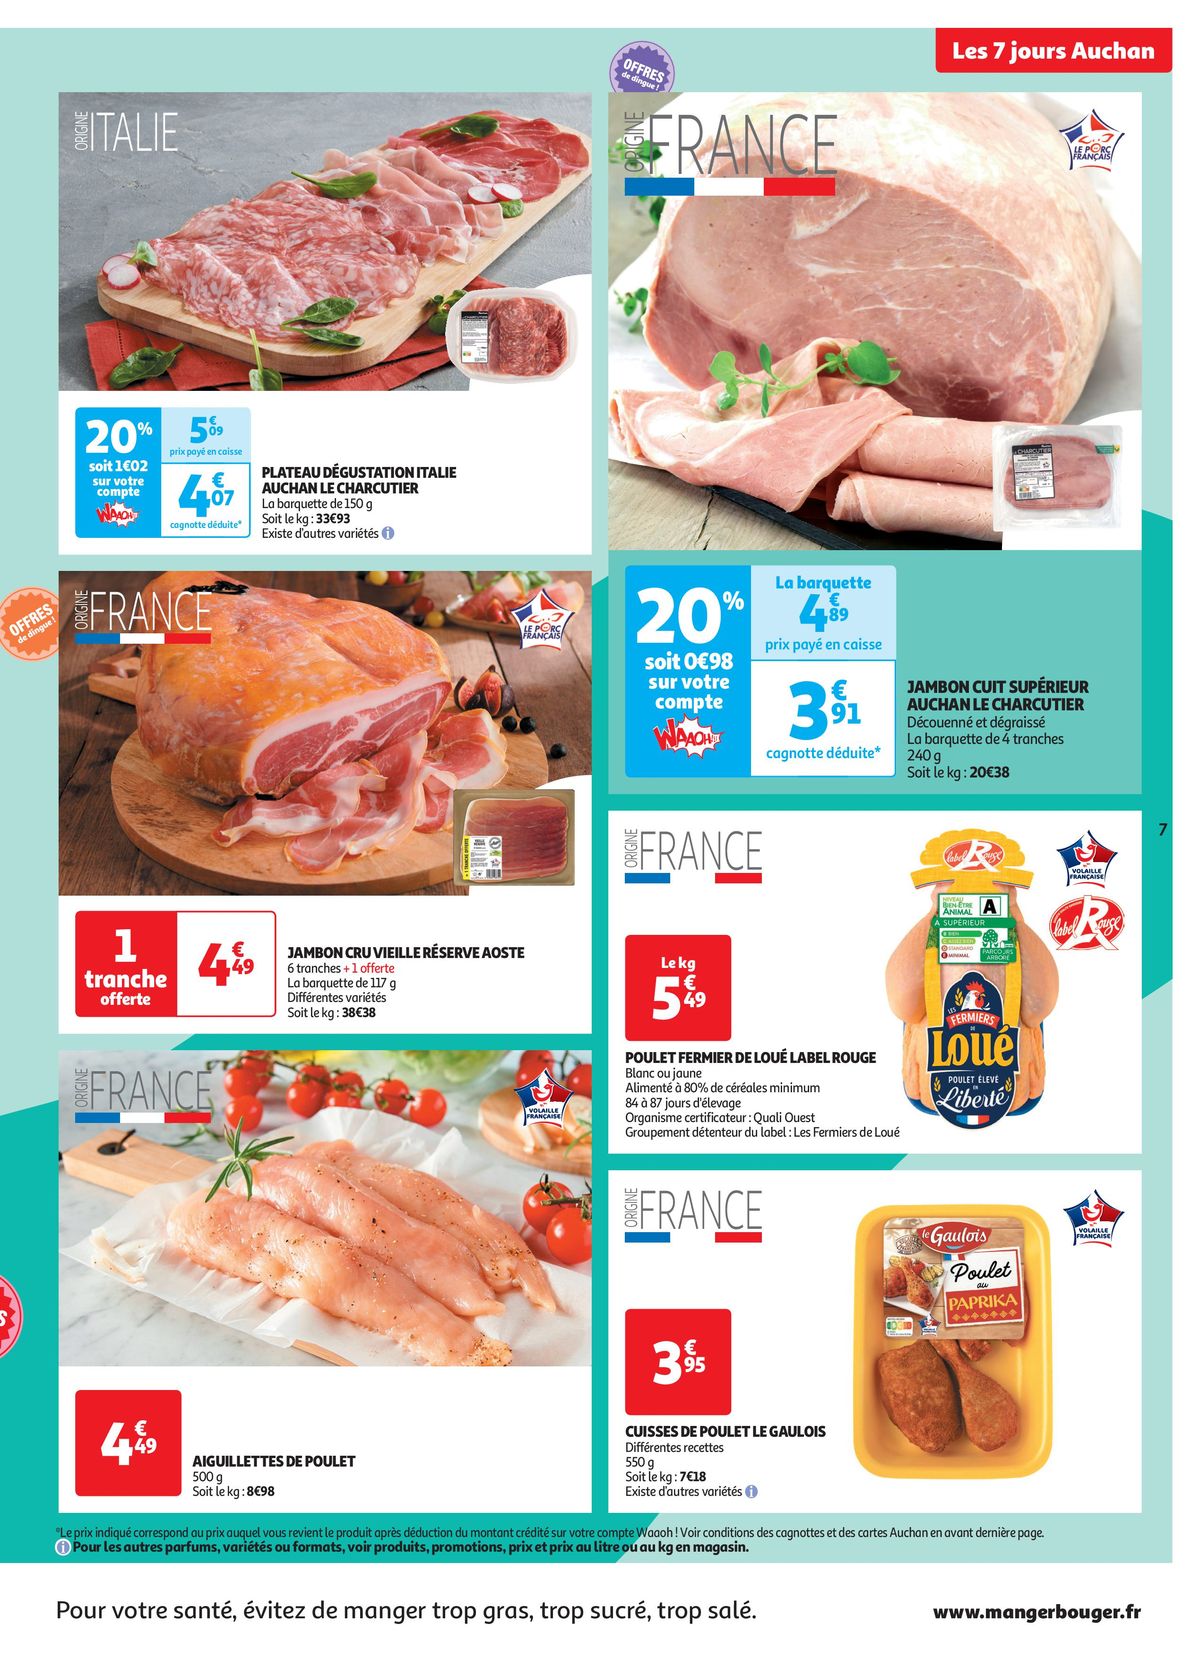 Catalogue C'est les 7 jours Auchan dans votre super !, page 00007